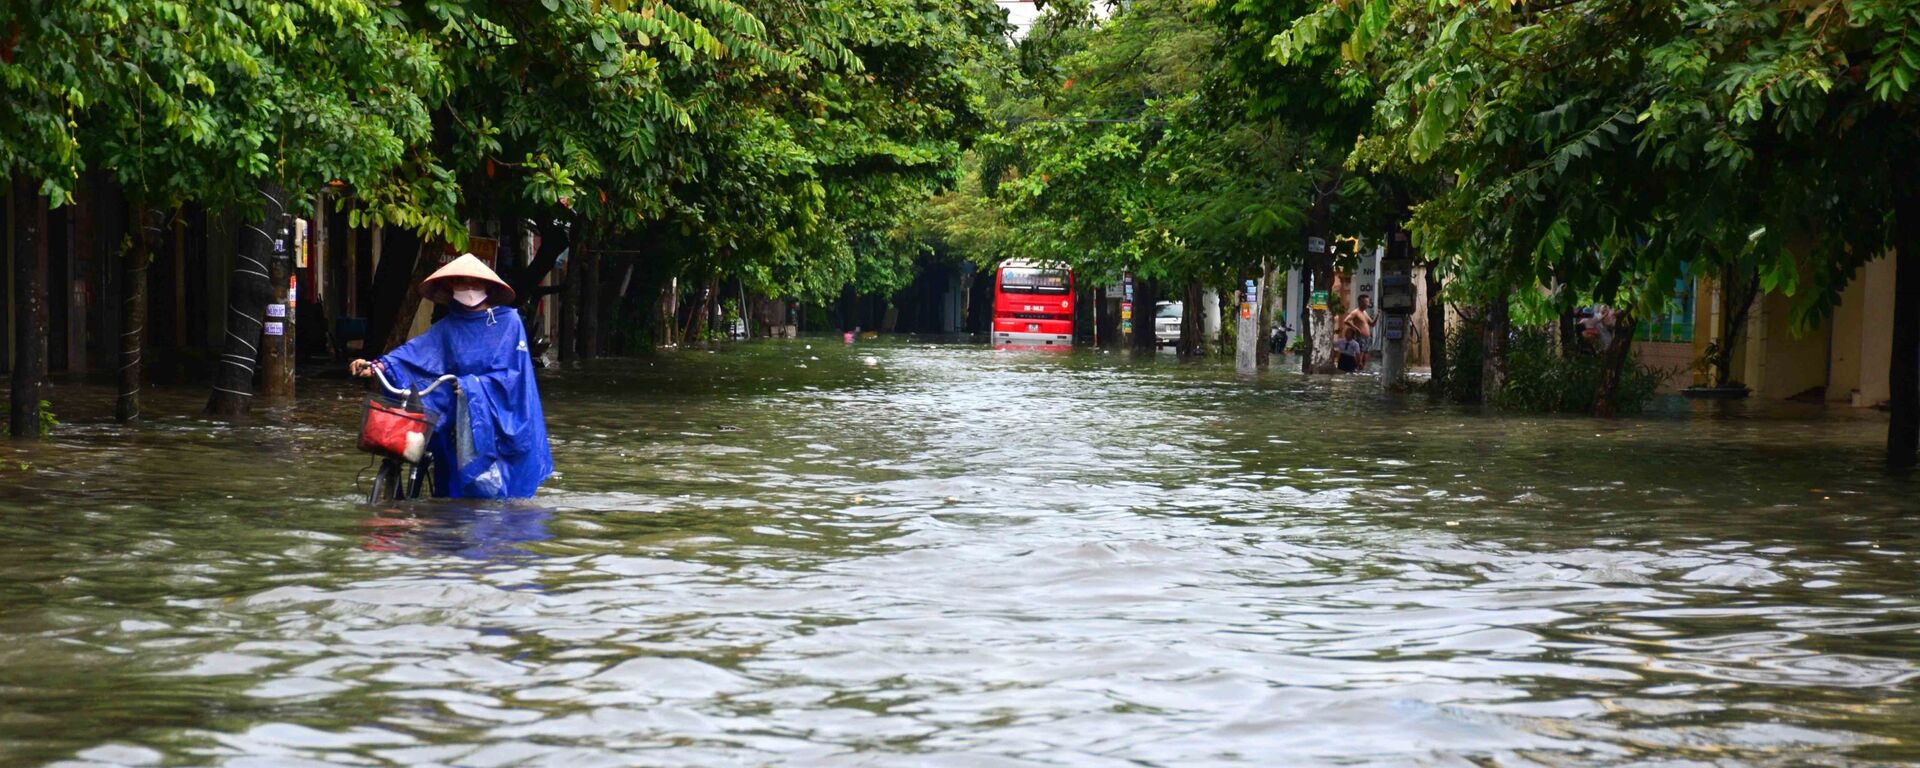 Mưa lớn khiến phố Máy Tơ, thành phố Nam Định bị ngập sâu trong nước, các phương tiện di chuyển khó khăn - Sputnik Việt Nam, 1920, 09.09.2021